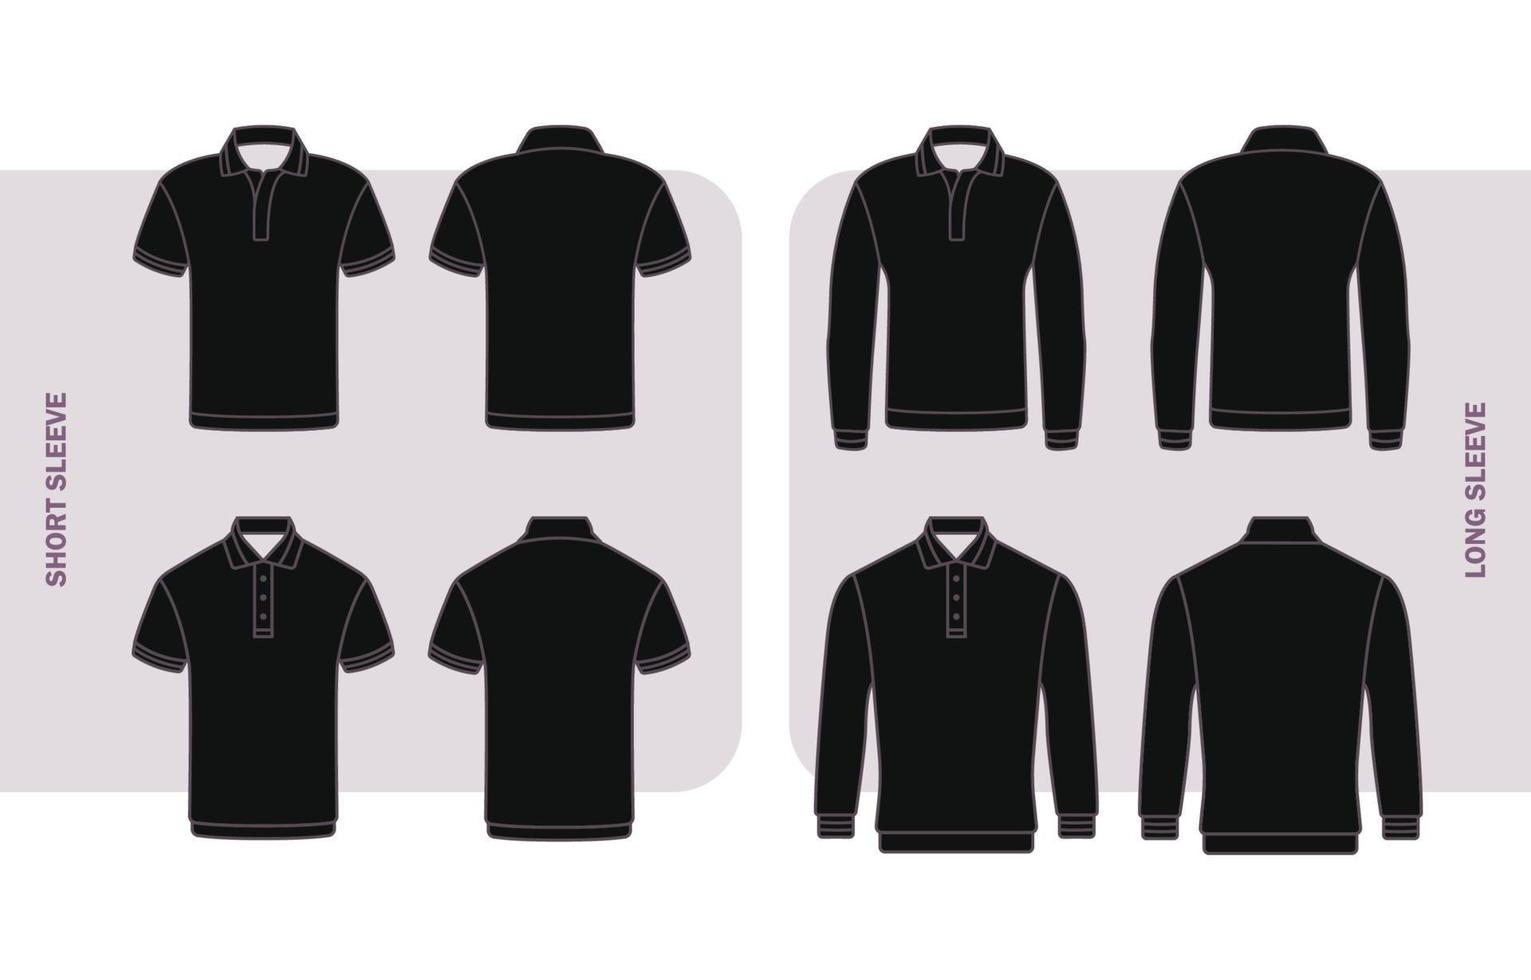 schets zwart polo overhemd mockup in divers mouwen vector